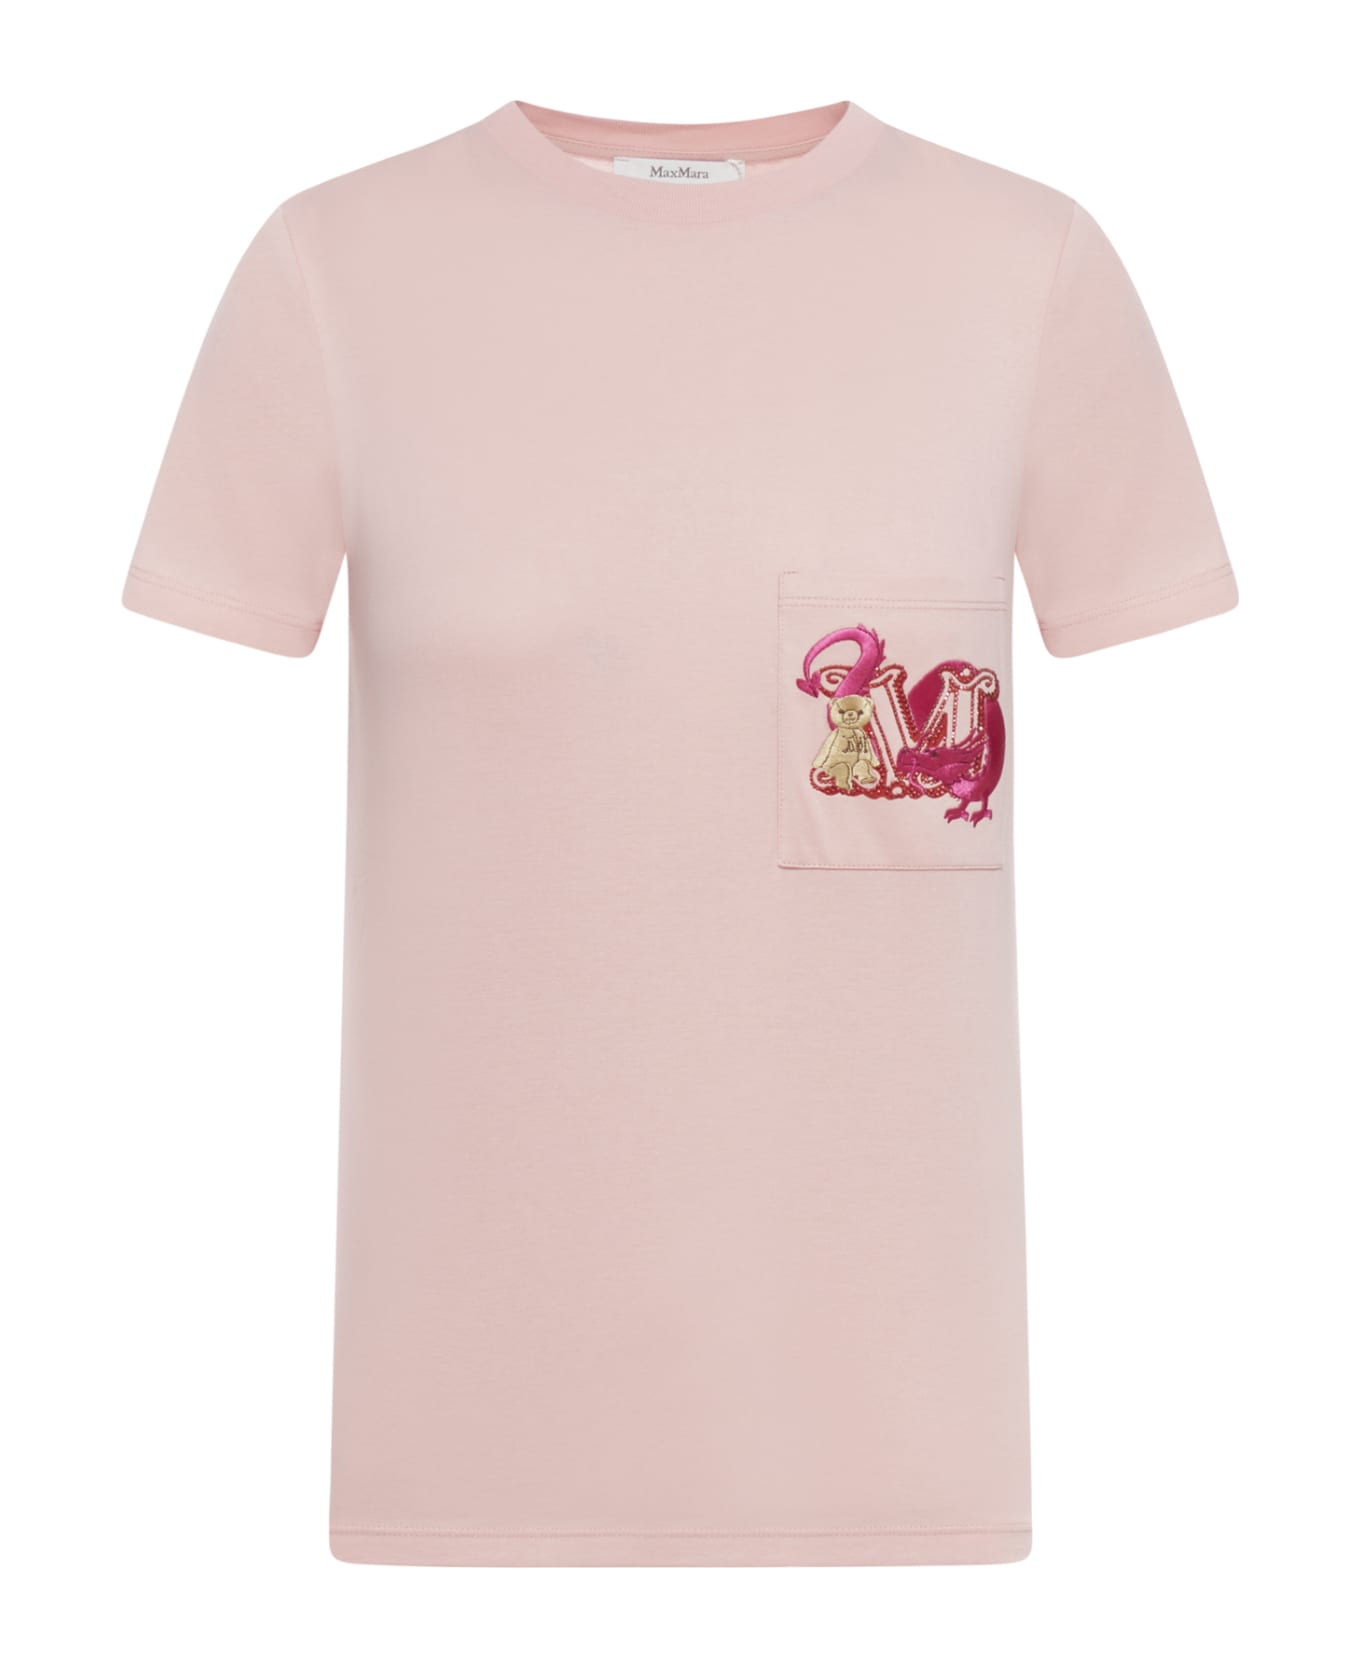 Max Mara Elmo Tops - Pink Tシャツ